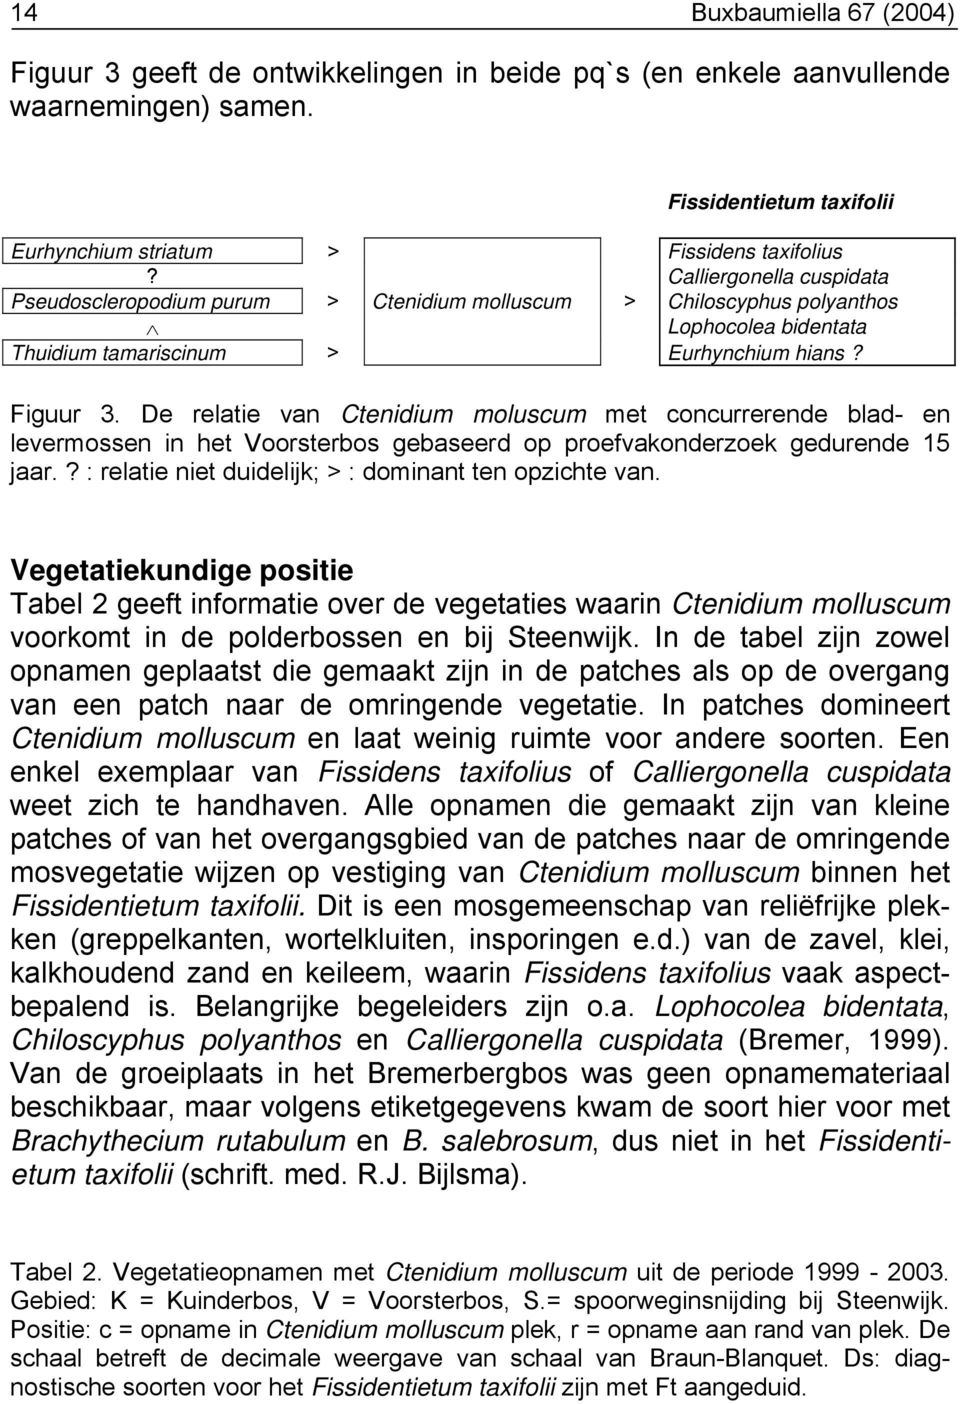 De relatie van Ctenidium moluscum met concurrerende blad- en levermossen in het Voorsterbos gebaseerd op proefvakonderzoek gedurende 15 jaar.? : relatie niet duidelijk; > : dominant ten opzichte van.